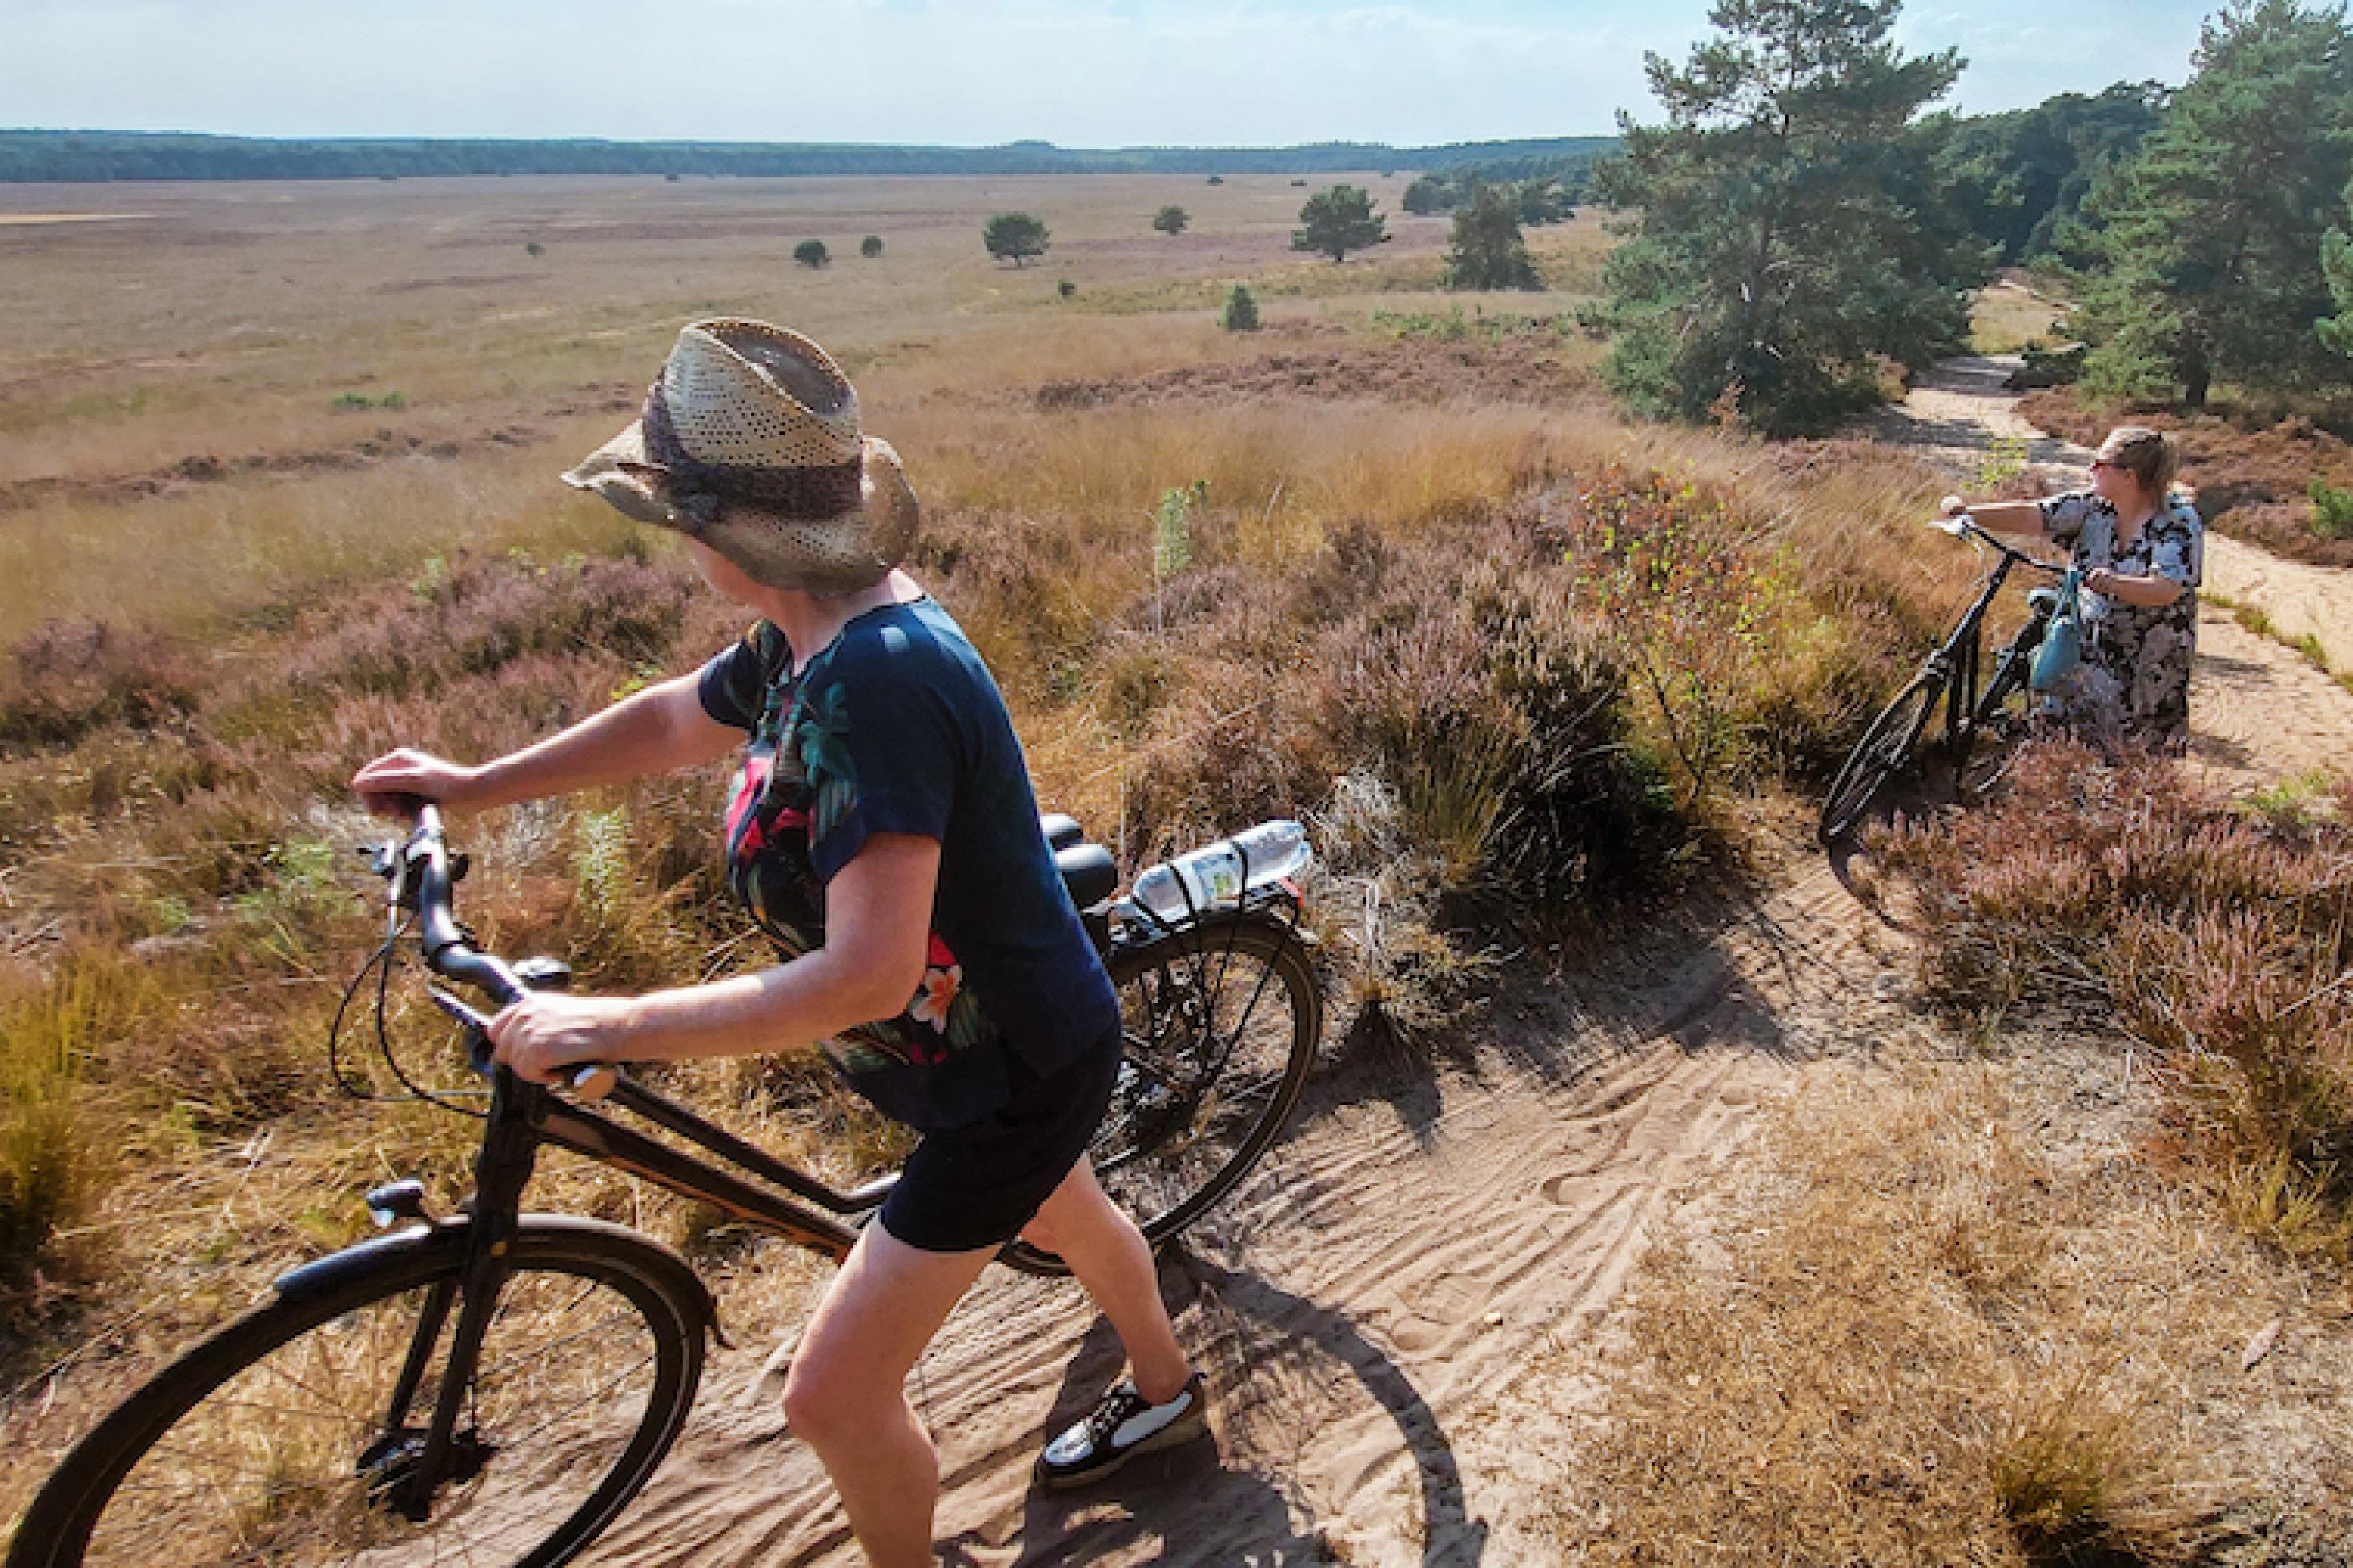 Zwei Radfahrerinnen touren durch die trockene Landschaft des niederländischen Naturschutzparks Velouwe.